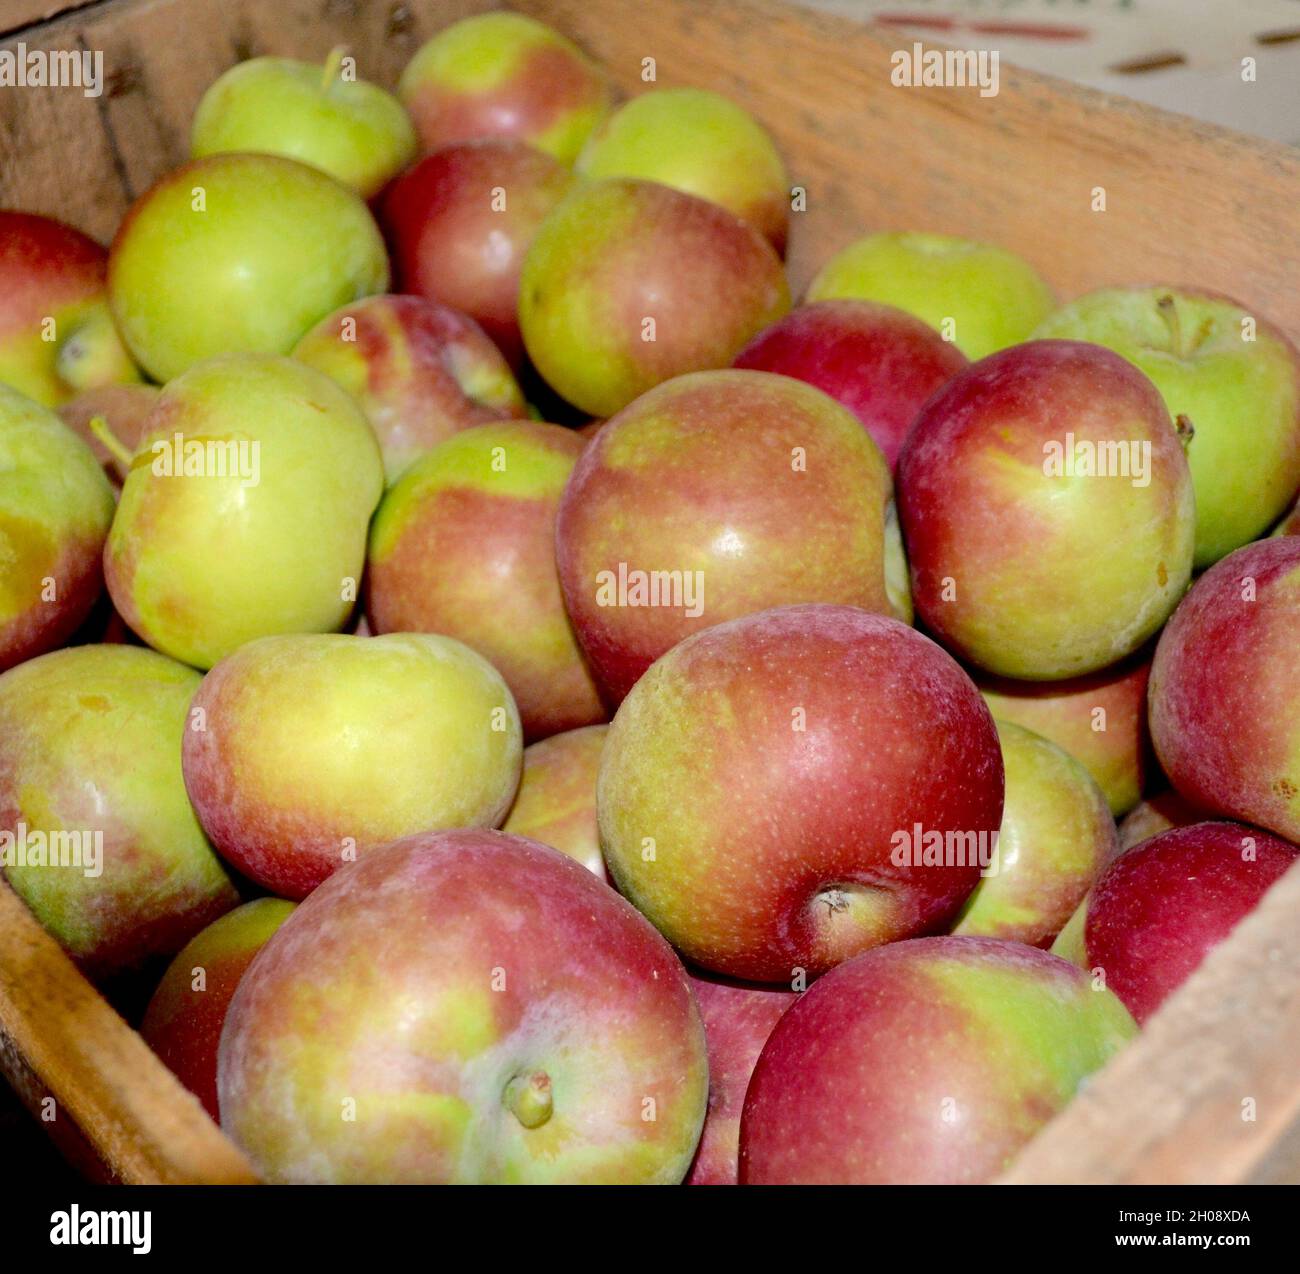 Las manzanas crujientes de Macintosh del Valle Hudson de Nueva York se enviaron en una caja de madera. Foto de stock